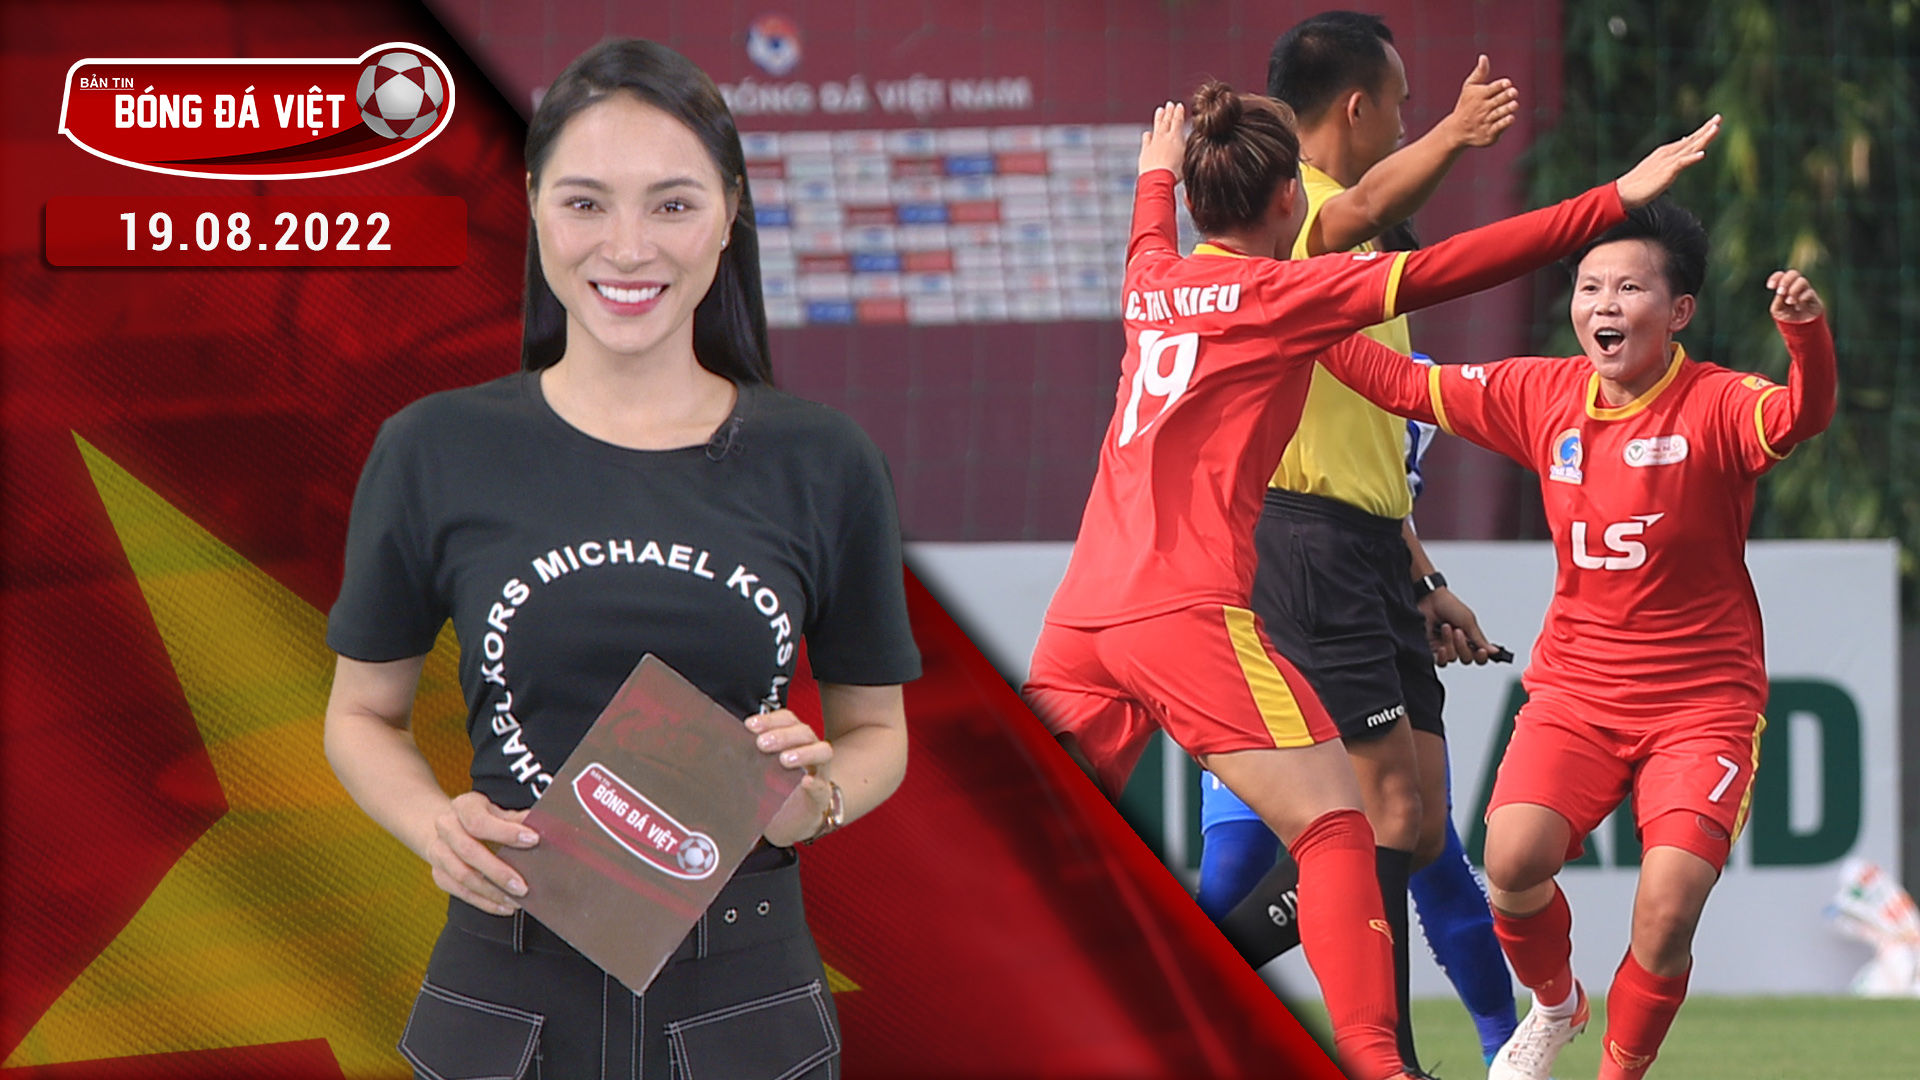 TP HCM 1 vào chung kết Giải Bóng đá nữ Cúp quốc gia 2022 - Bản tin Bóng đá Việt 19/08